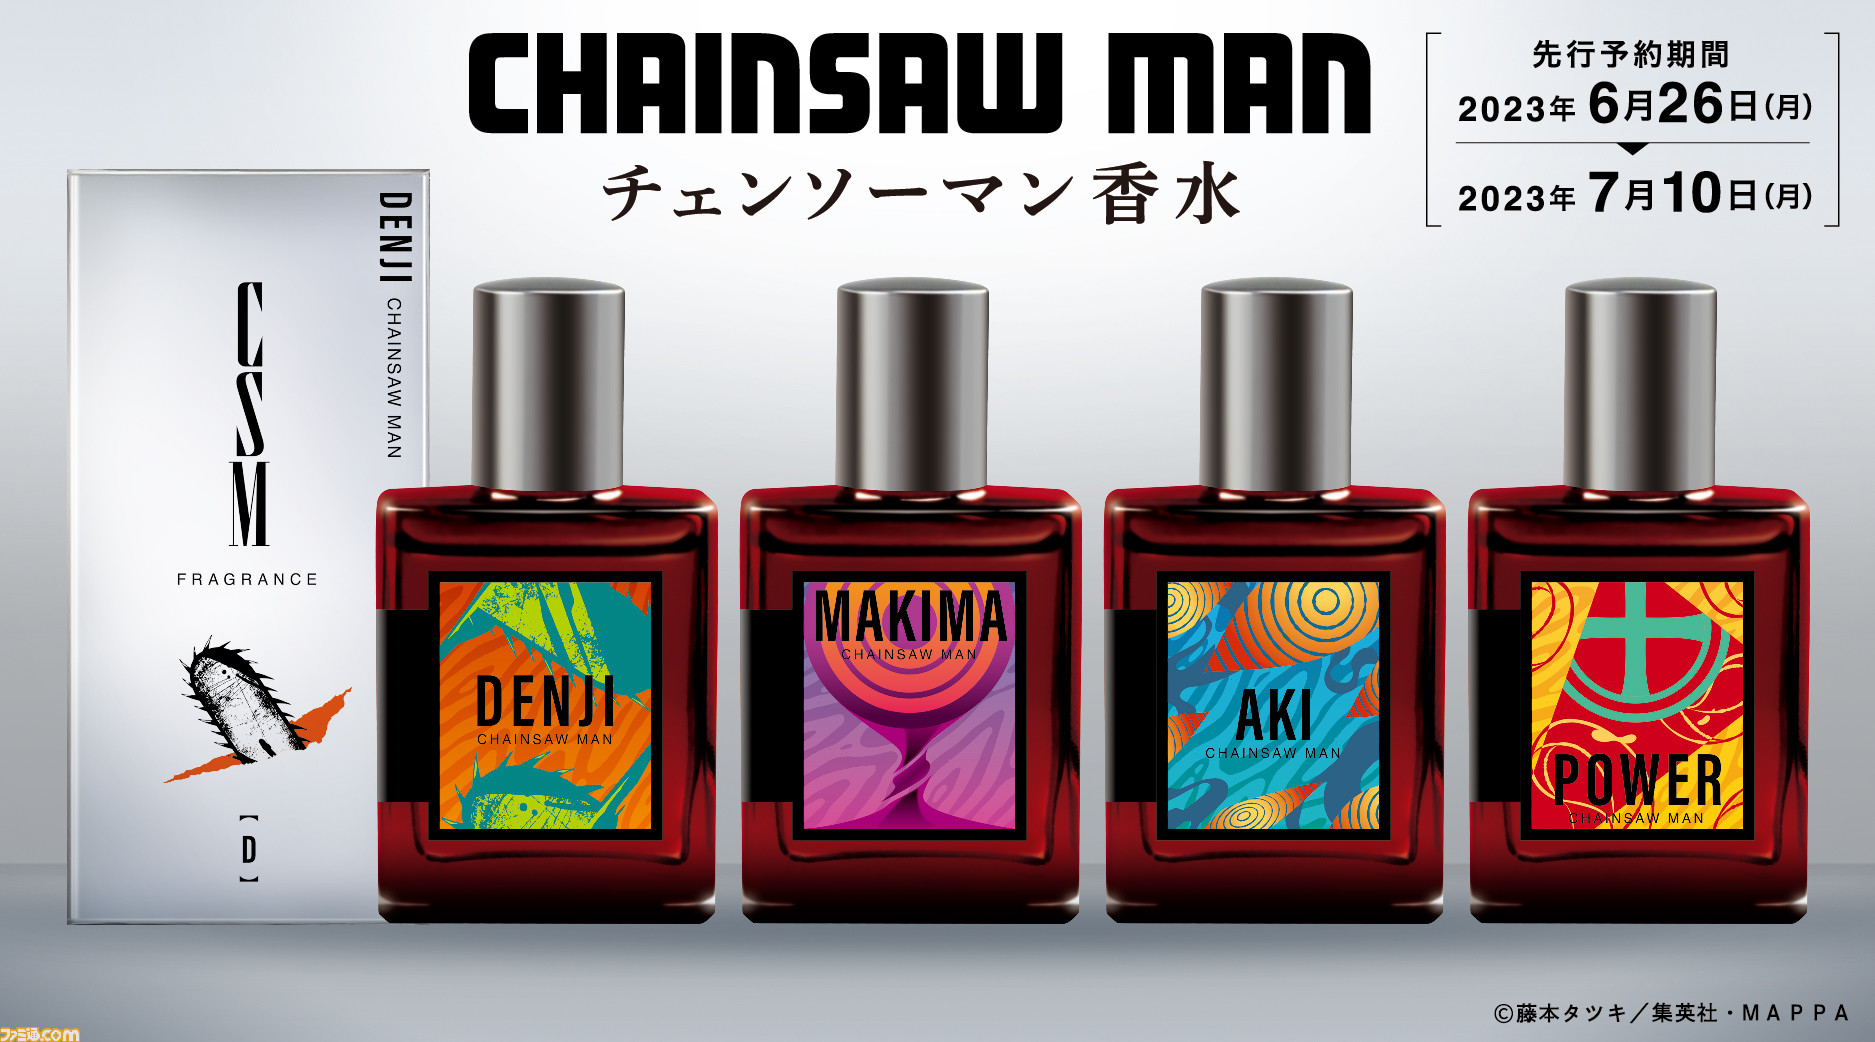 チェンソーマン』デンジ、マキマ、早川アキ、パワーをイメージした香水 ...